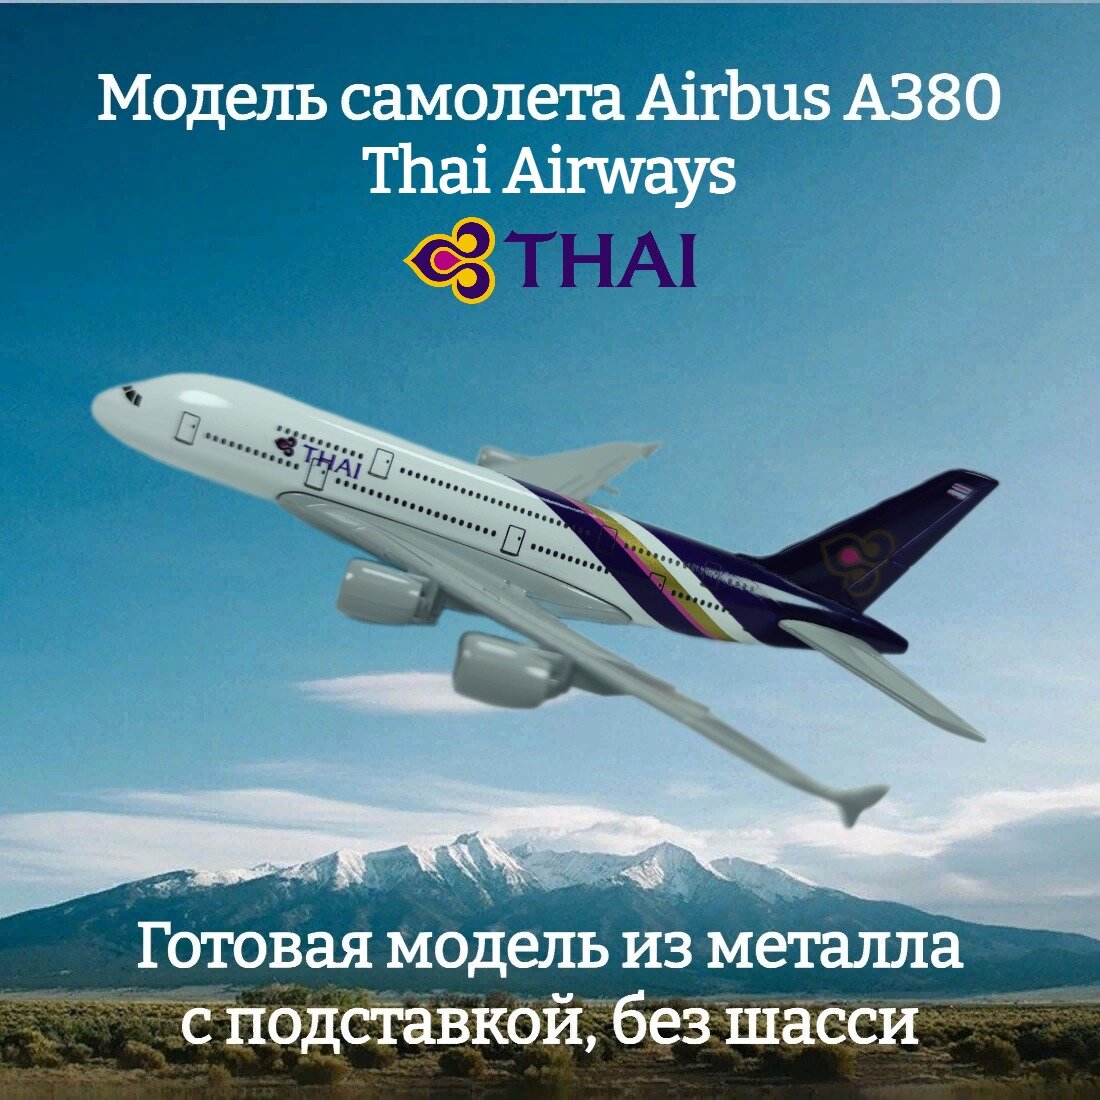 Модель самолета Airbus A380 Thai Airways длина 14 см (без шасси)